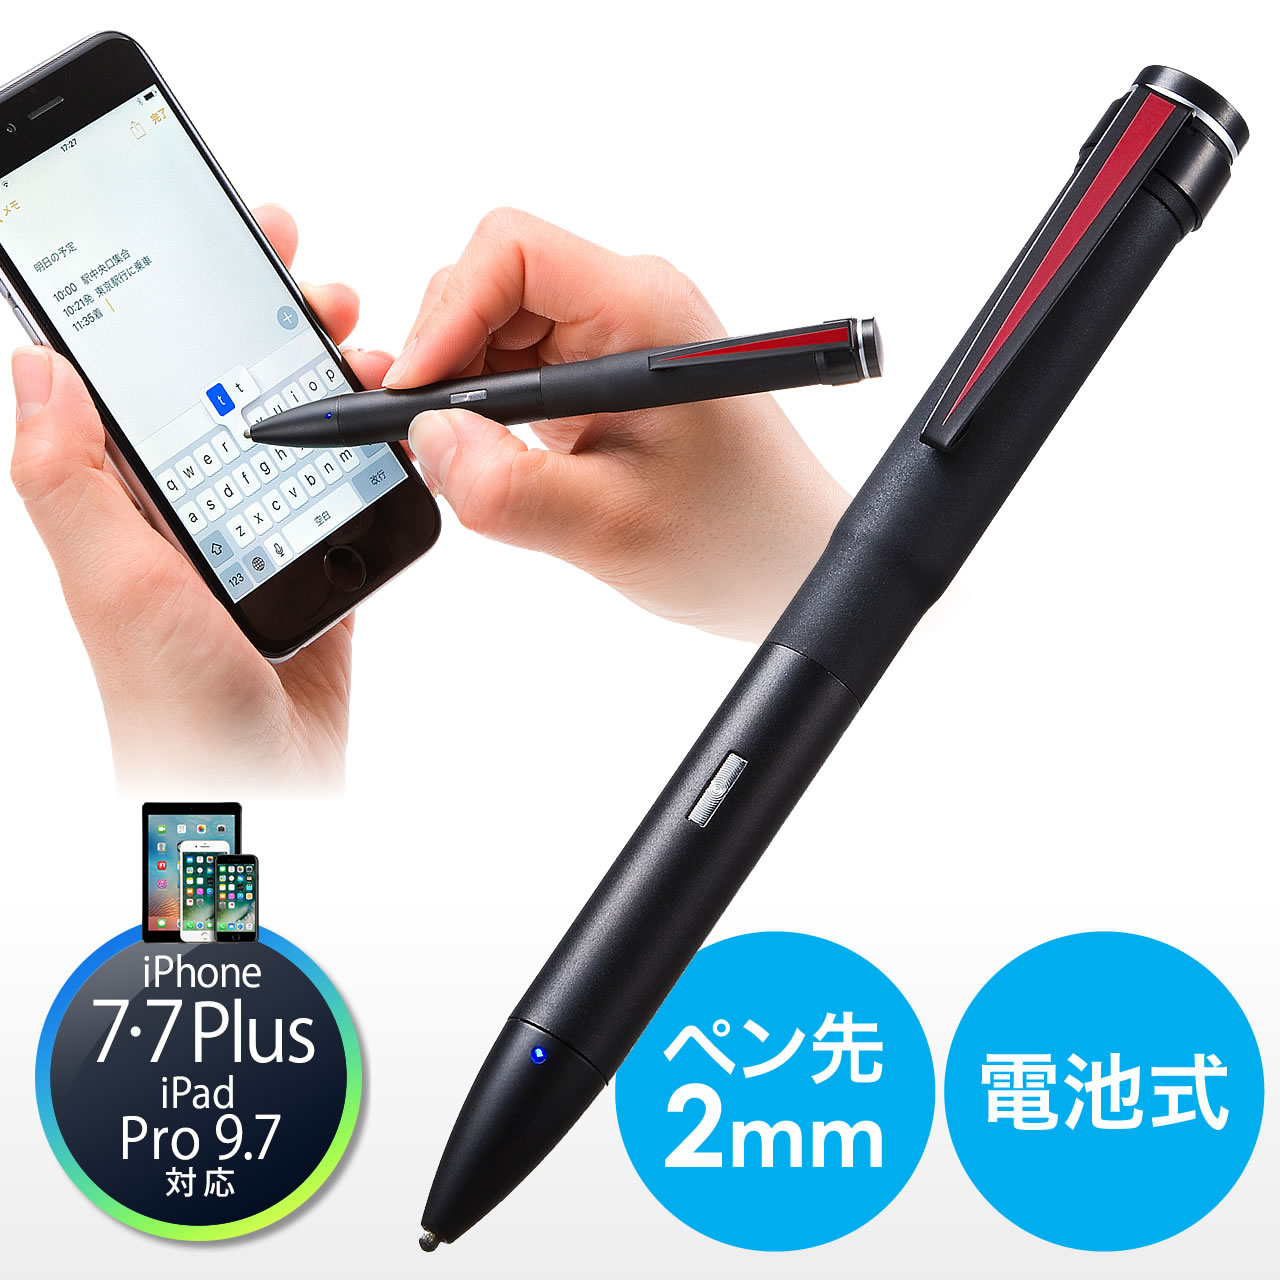 極細タッチペン スタイラスペン Ipad Iphone対応 ブラック 200 Pen029bkの販売商品 通販ならサンワダイレクト